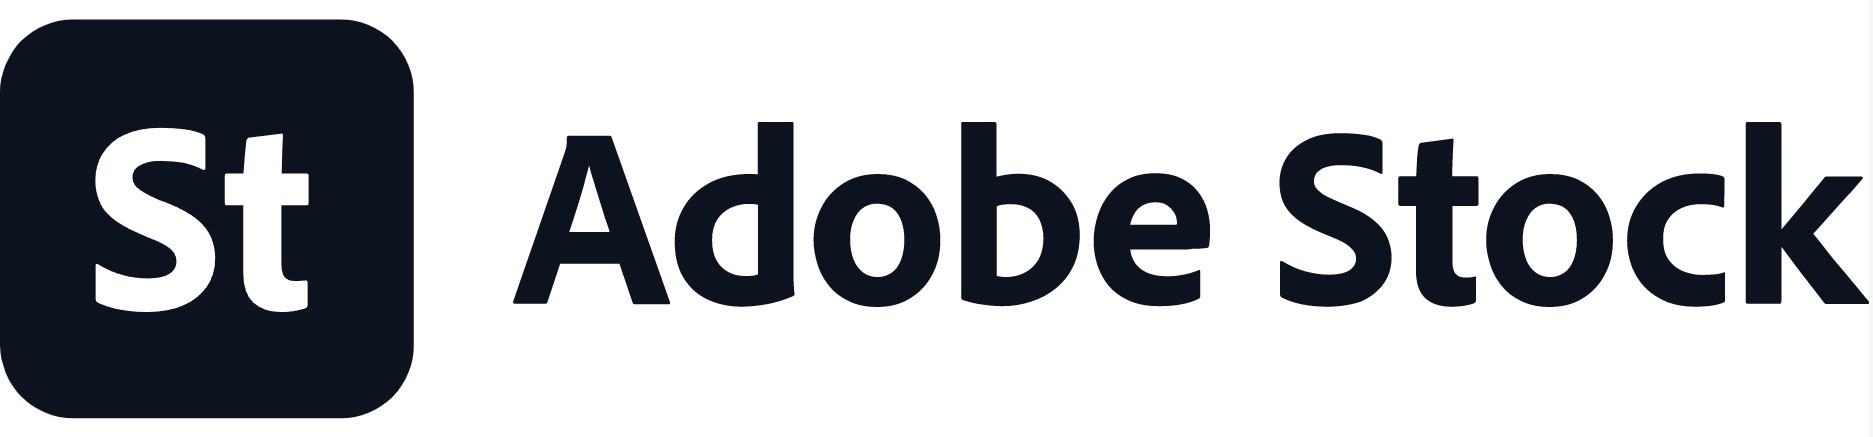 Adobe_Stock_Logo